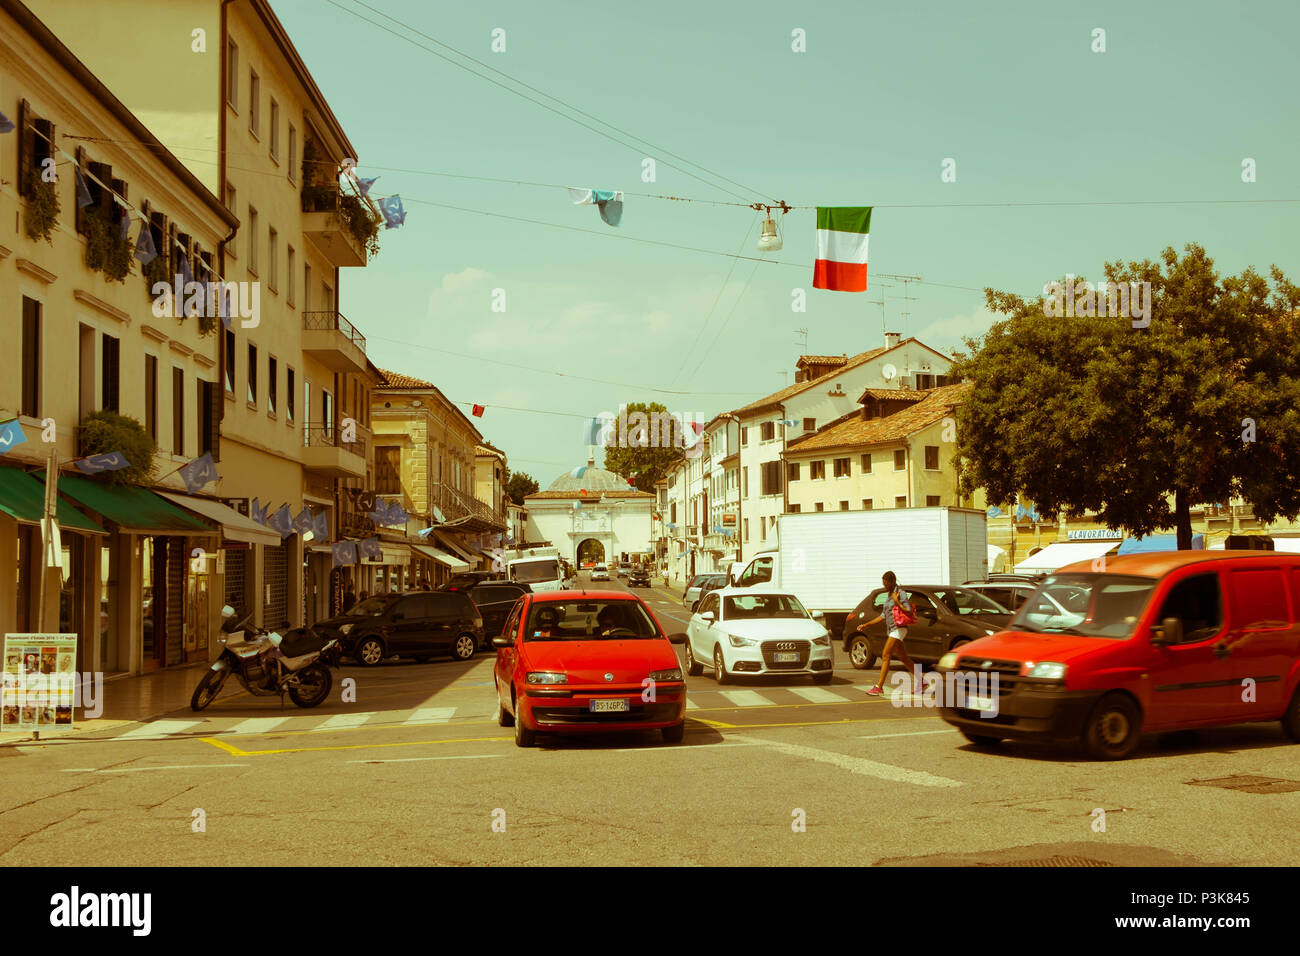 Un coche espera a otro coche para pasar a una intersección. Un peatón camina sobre el paso de cebra. Esta es la vida cotidiana en la ciudad de Treviso. Foto de stock